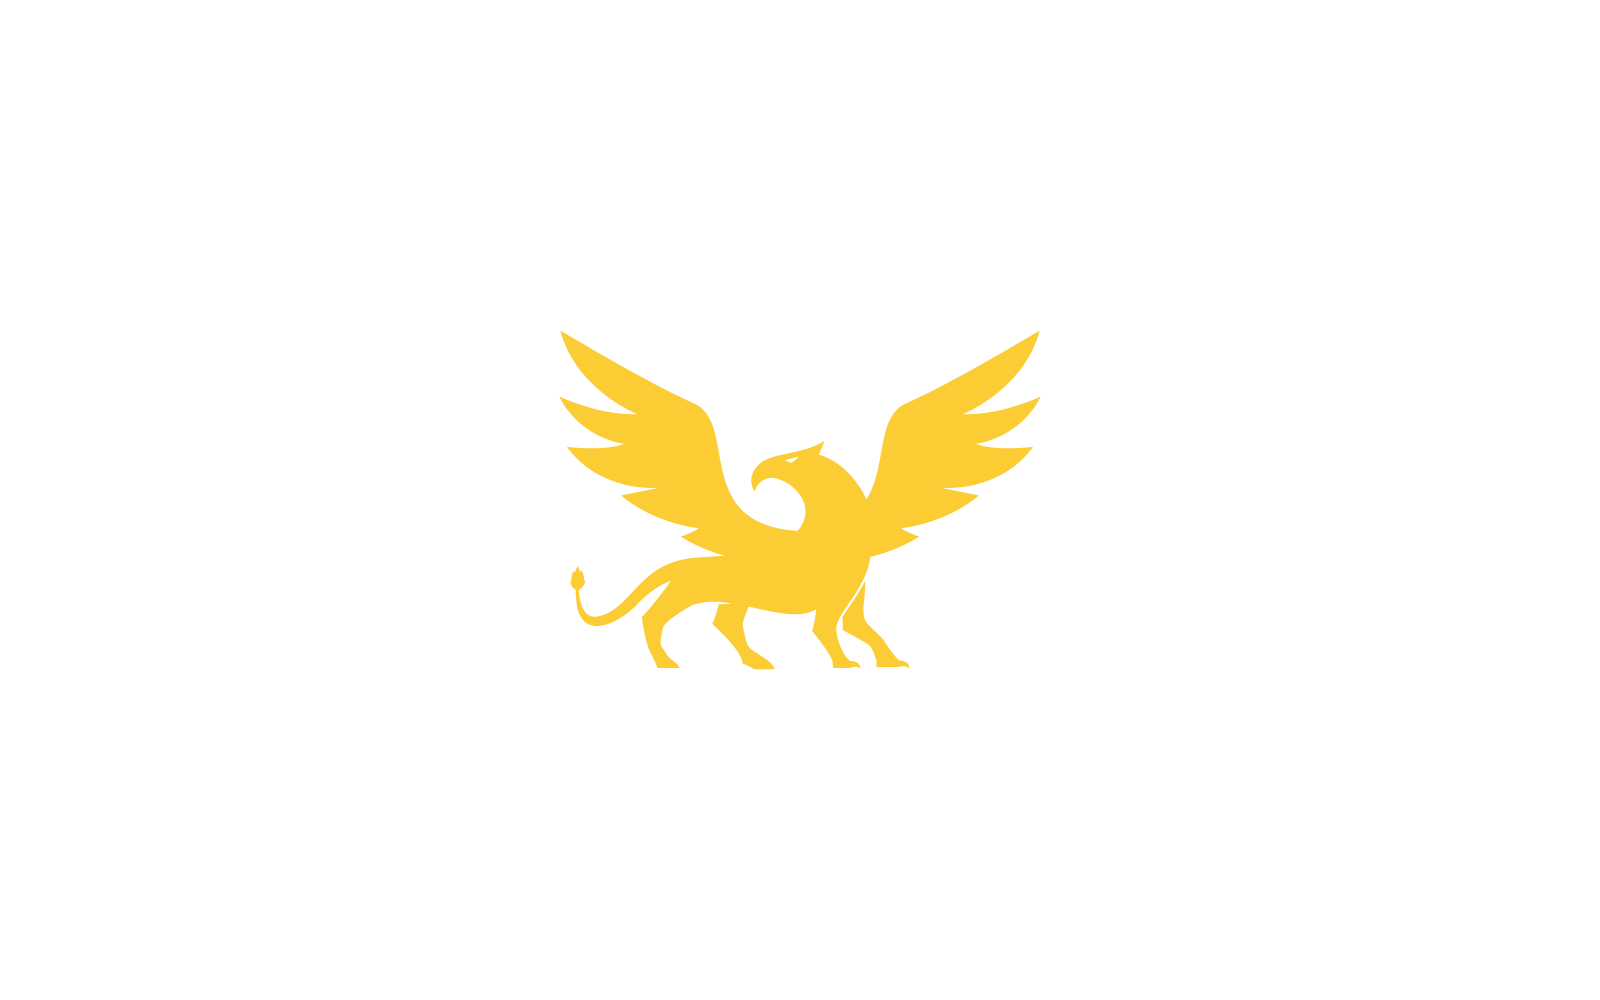 Griffin logosu illüstrasyon düz tasarım şablonu